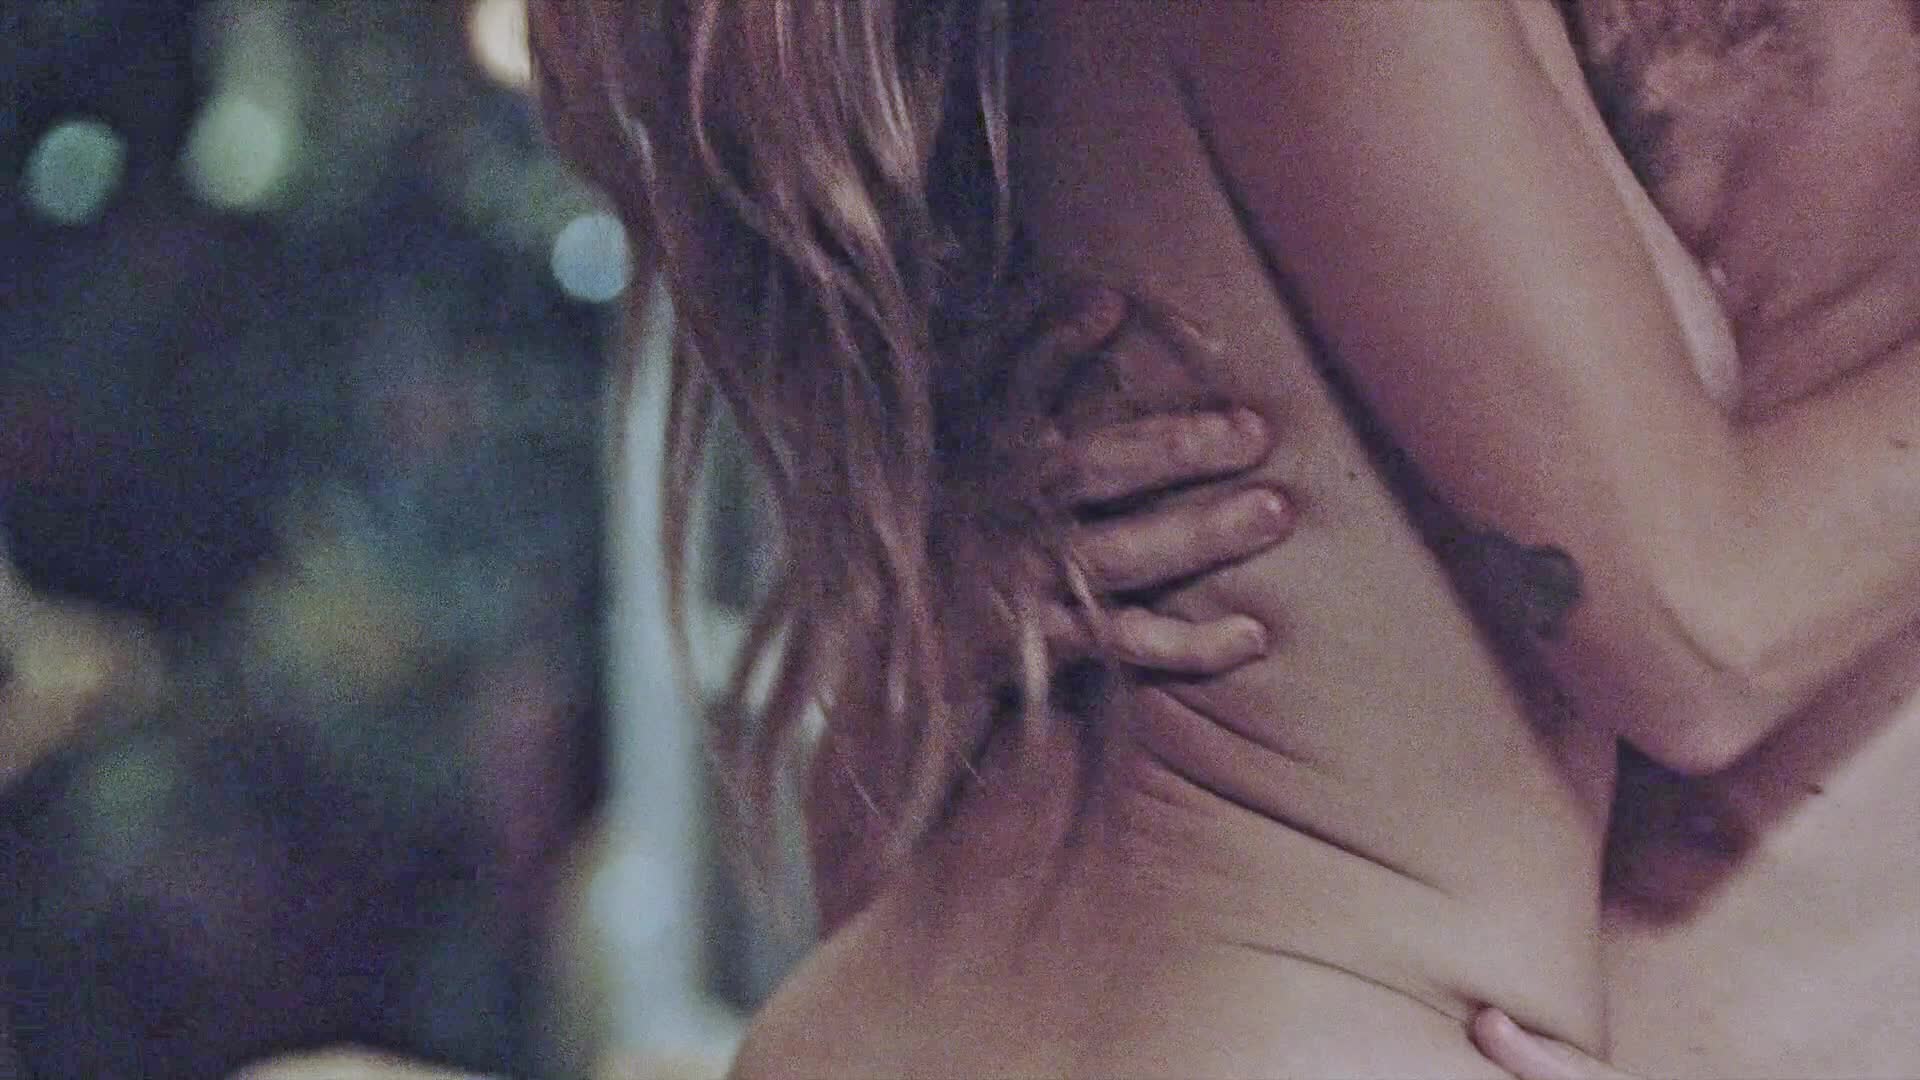 Eliza coupe nude scene